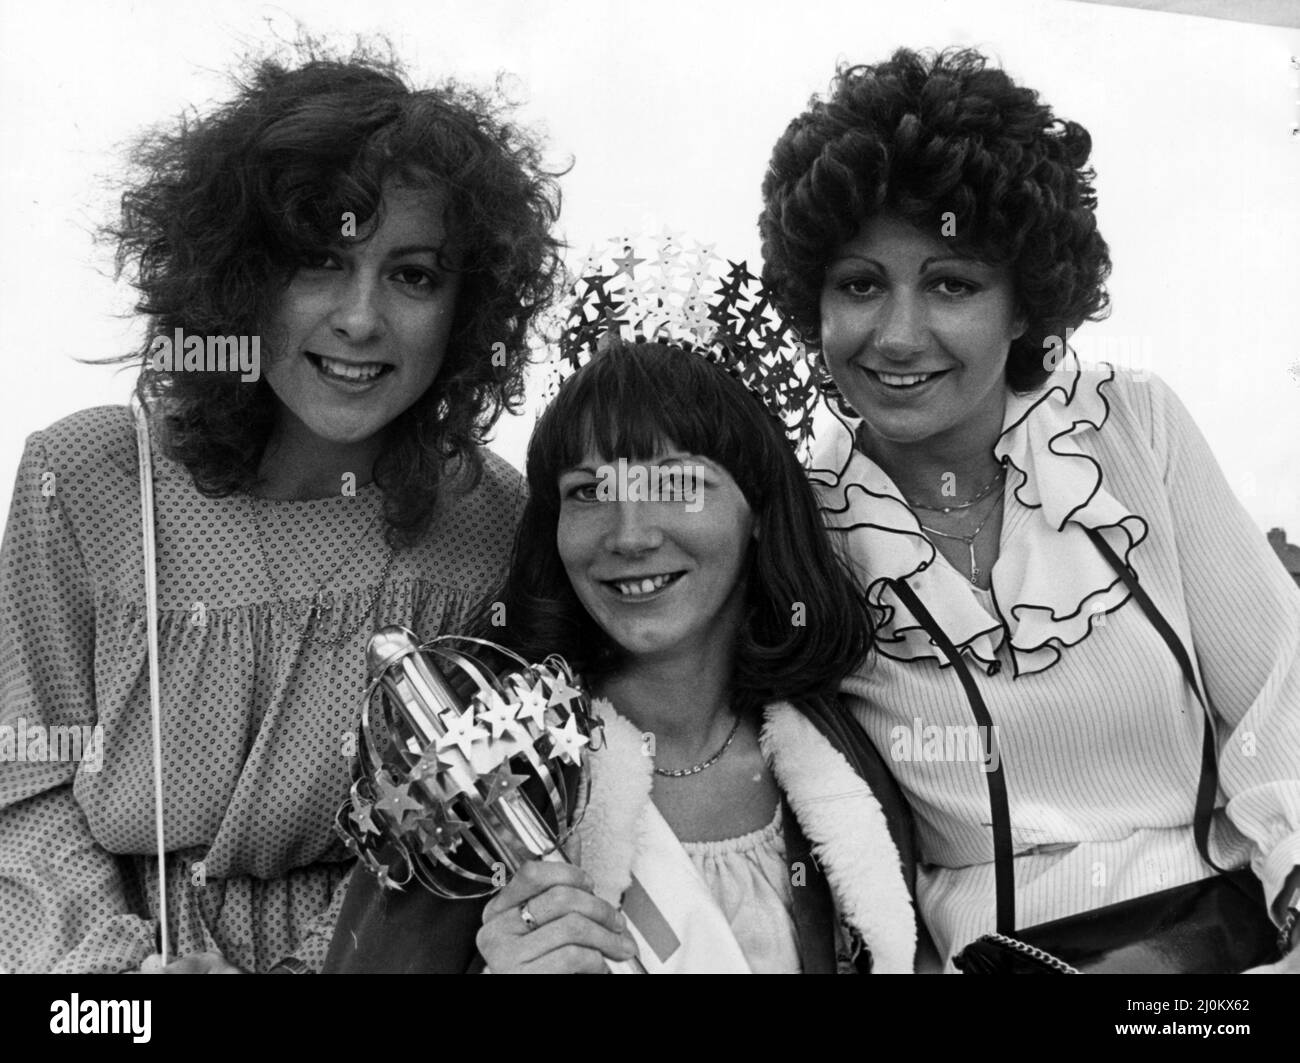 British Steel Gala Queen Linda Coxhall, avec Debbie Crosby (à gauche) et Julie Watson (à droite). 3rd juillet 1982. Banque D'Images